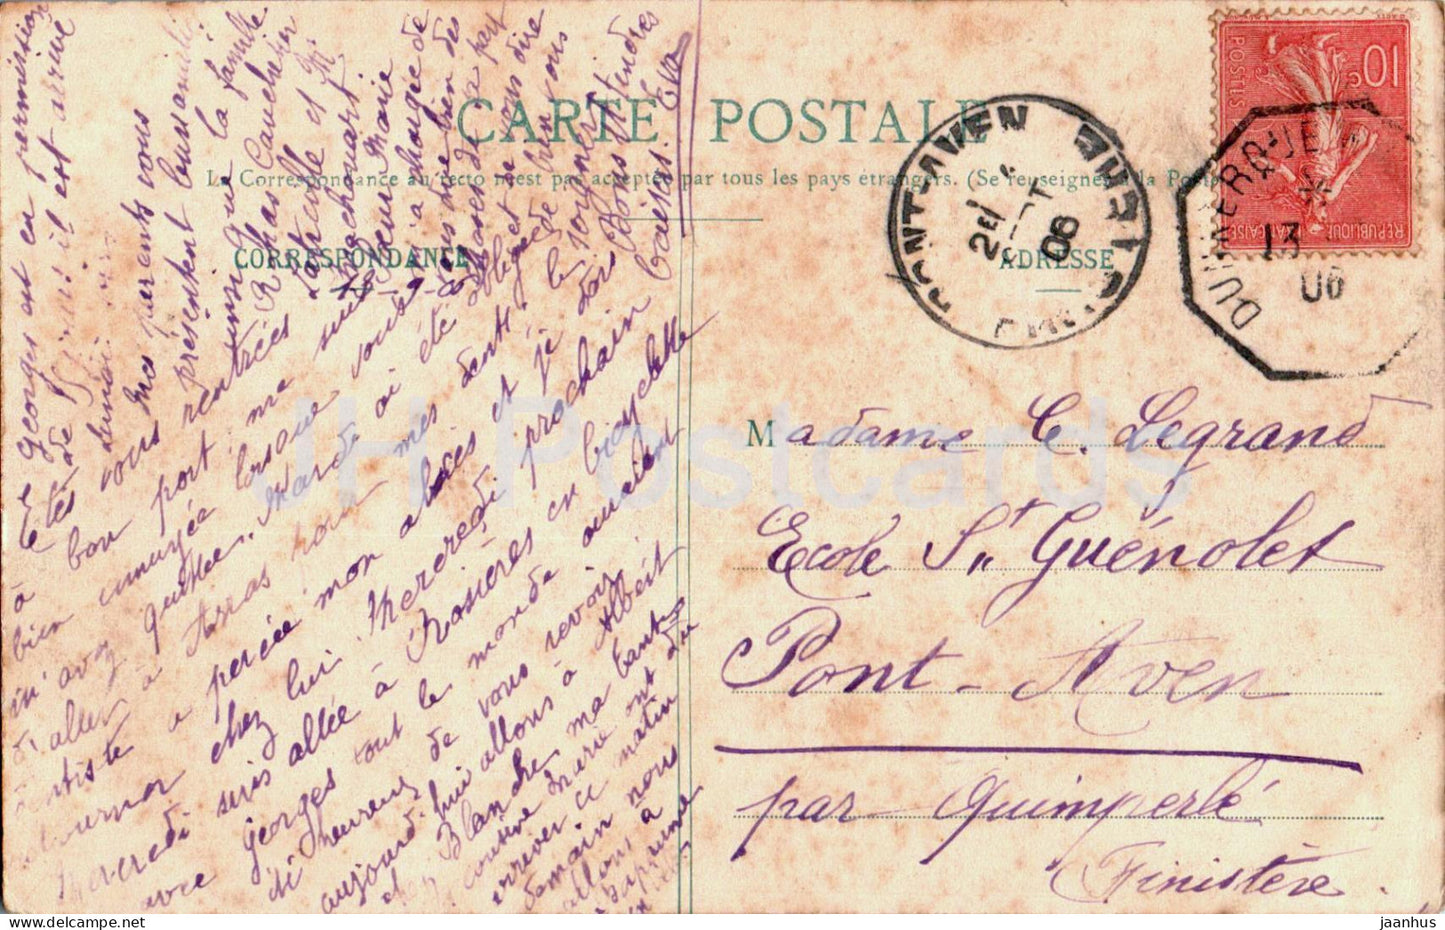 Le Treport - Vue prise de la Maison de Location Z. Levillain - old postcard - 1906 - France - used